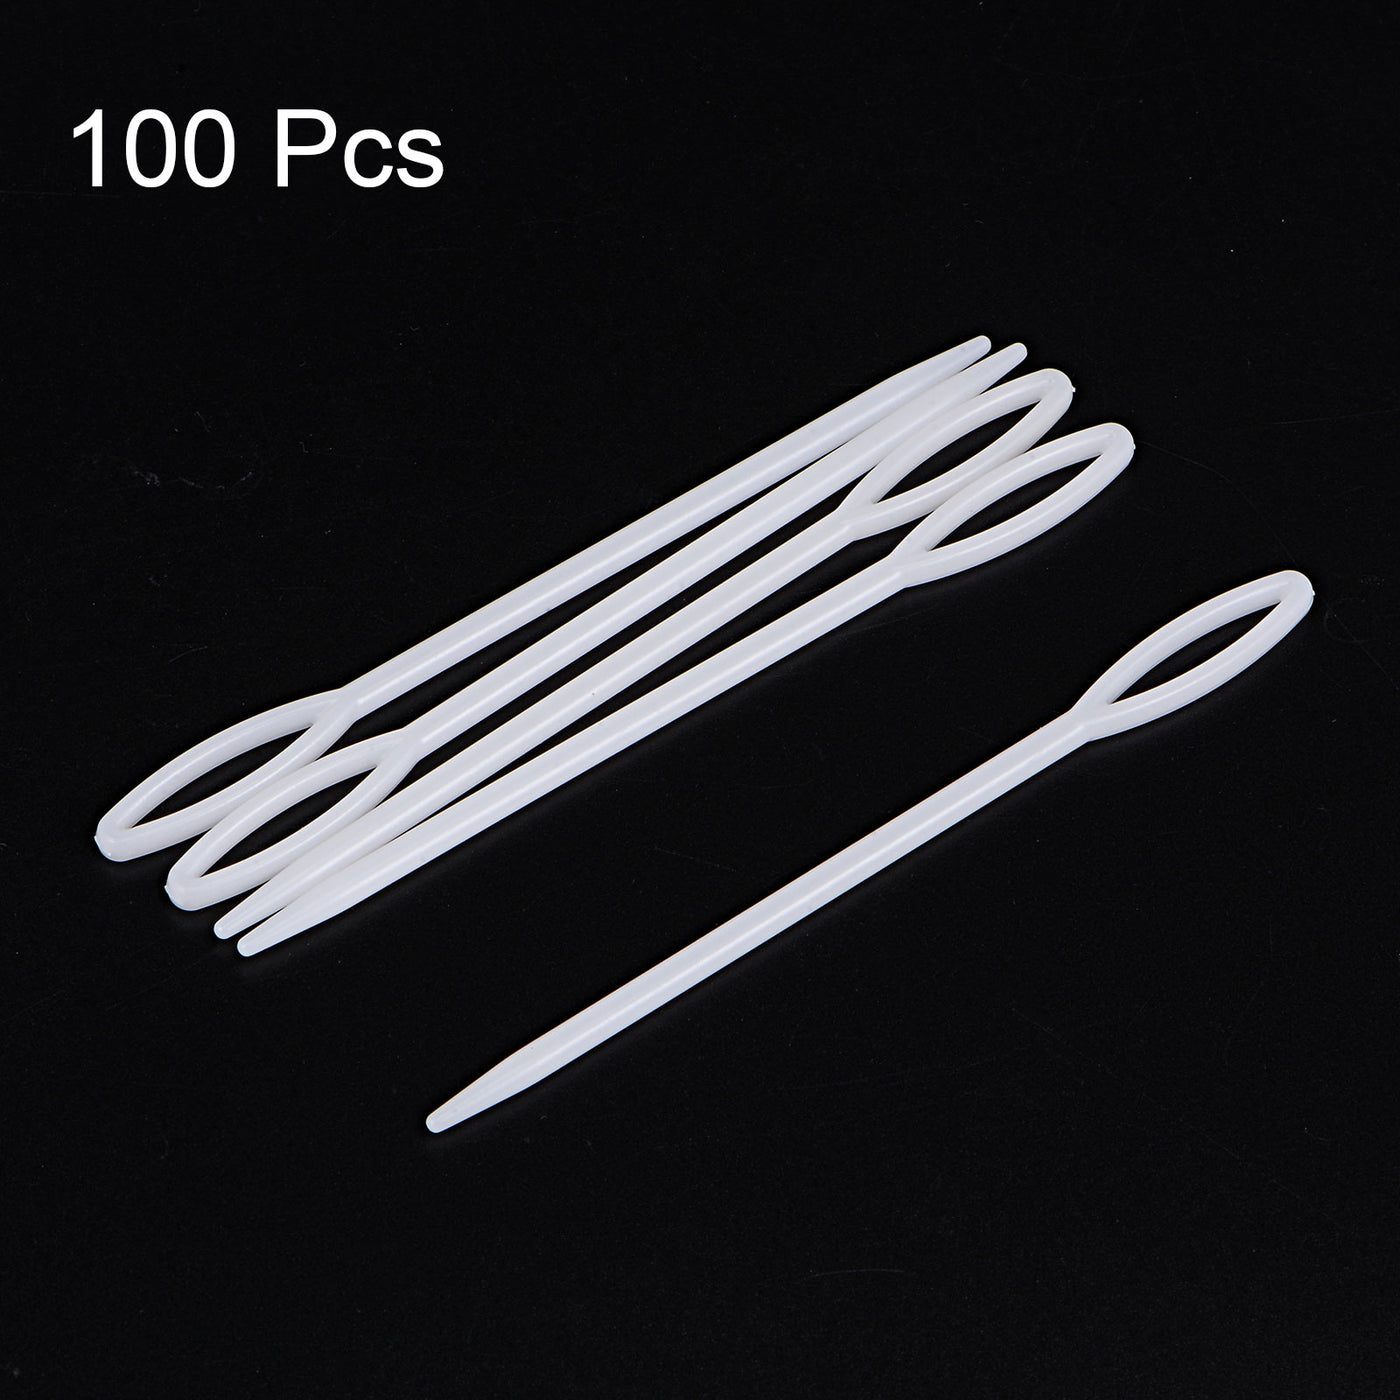 Harfington 100pcs Plastic Sewing Needles, 9cm Large Eye Blunt Learning Needles, White